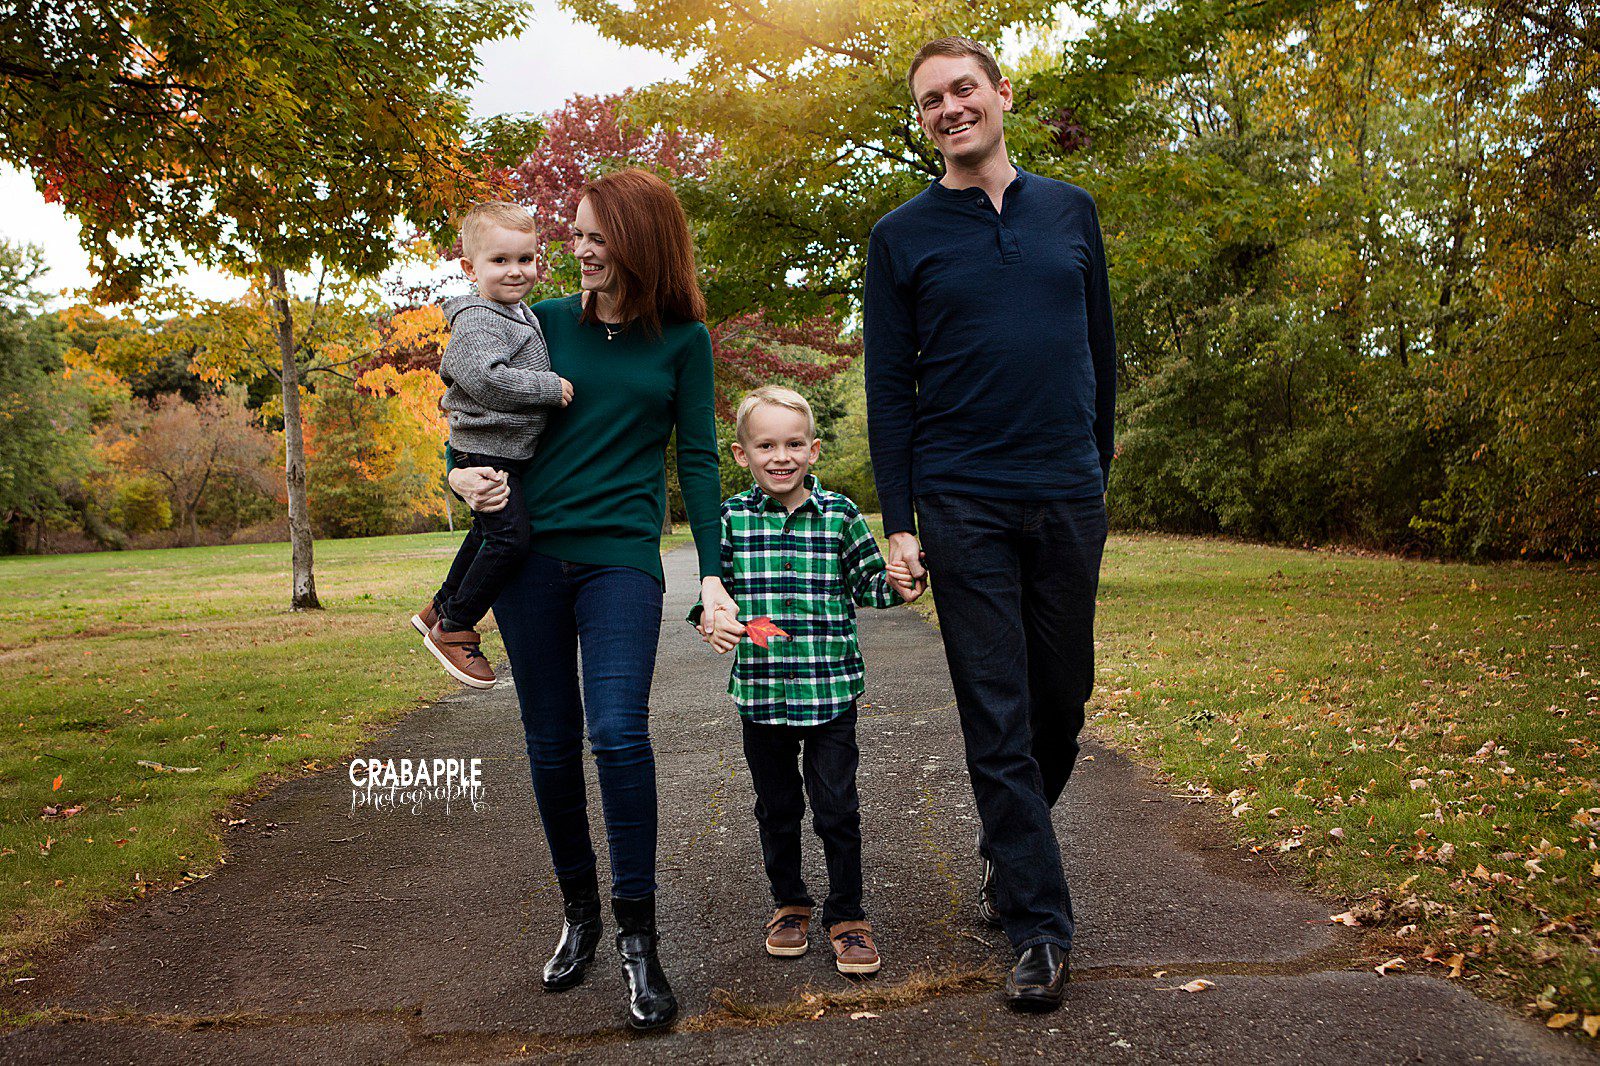 outdoor fall family photos using green